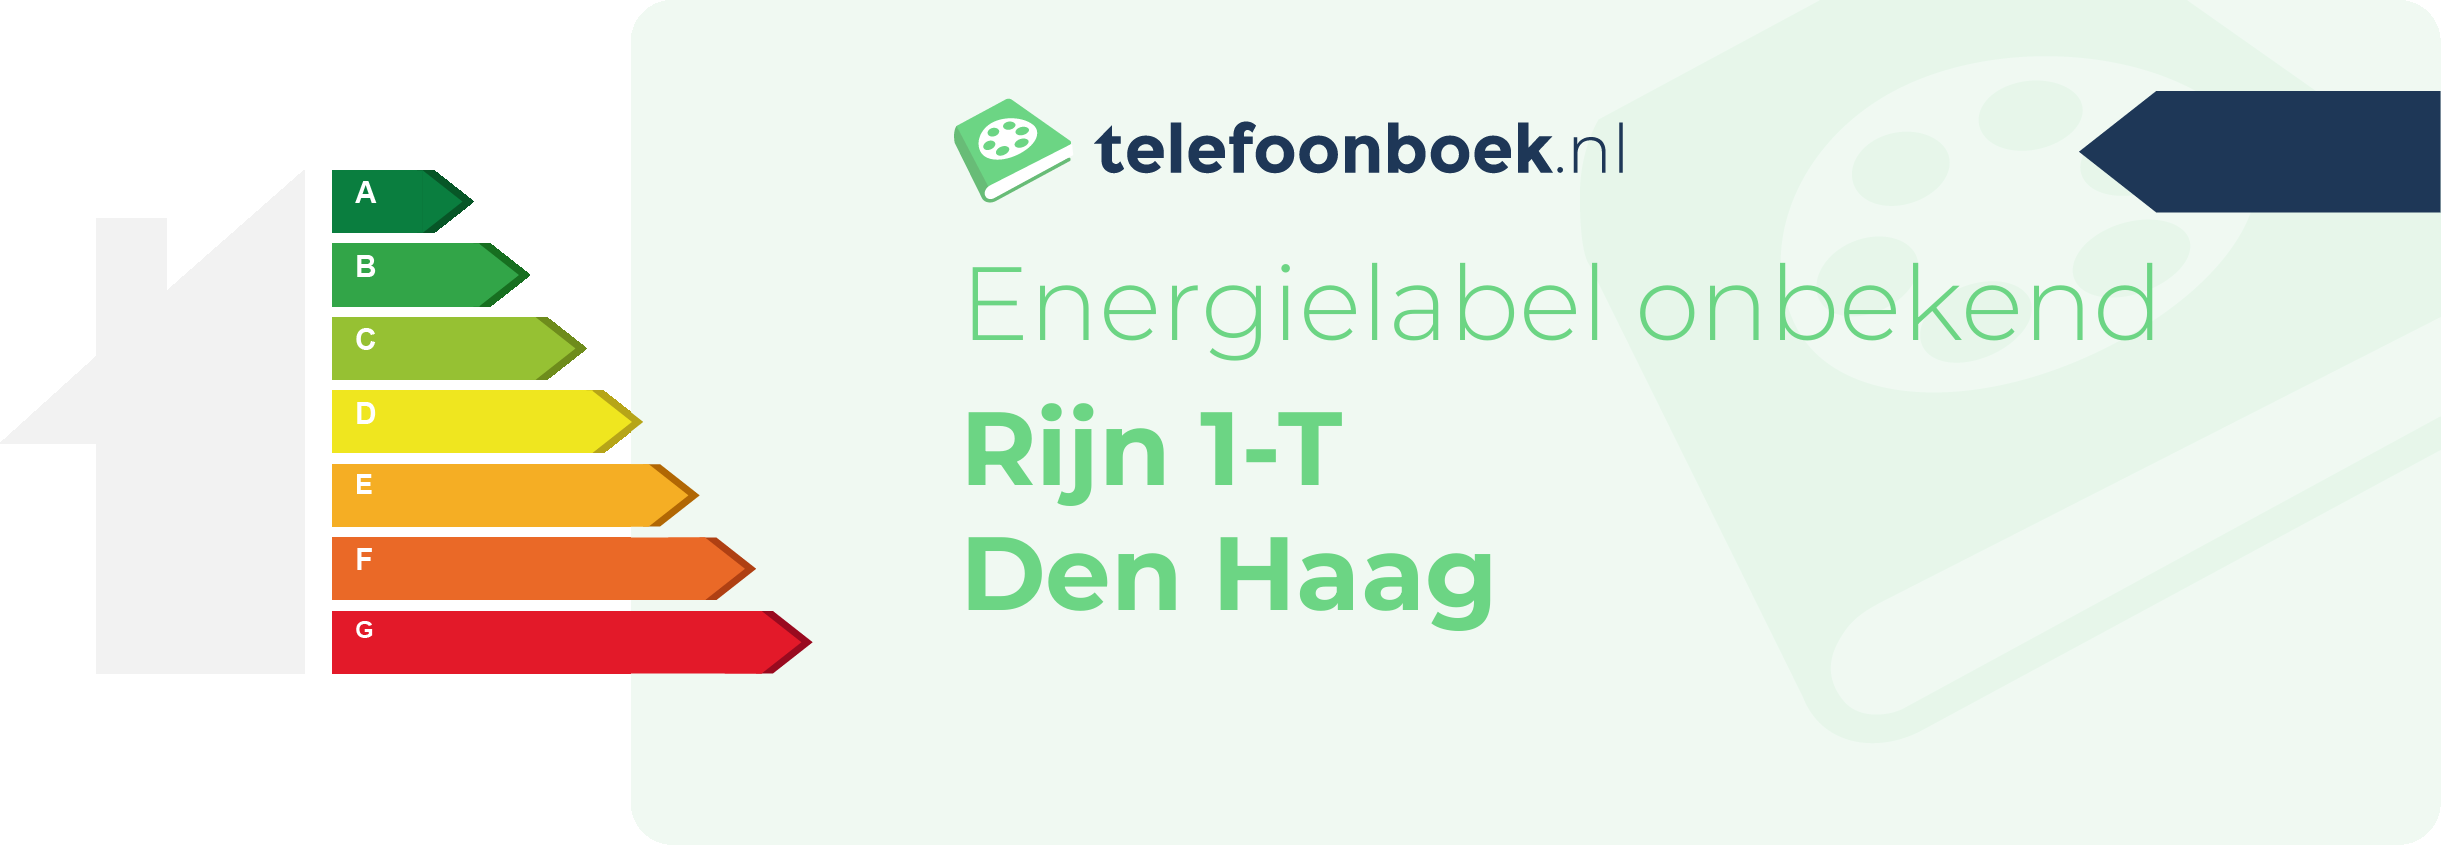 Energielabel Rijn 1-T Den Haag